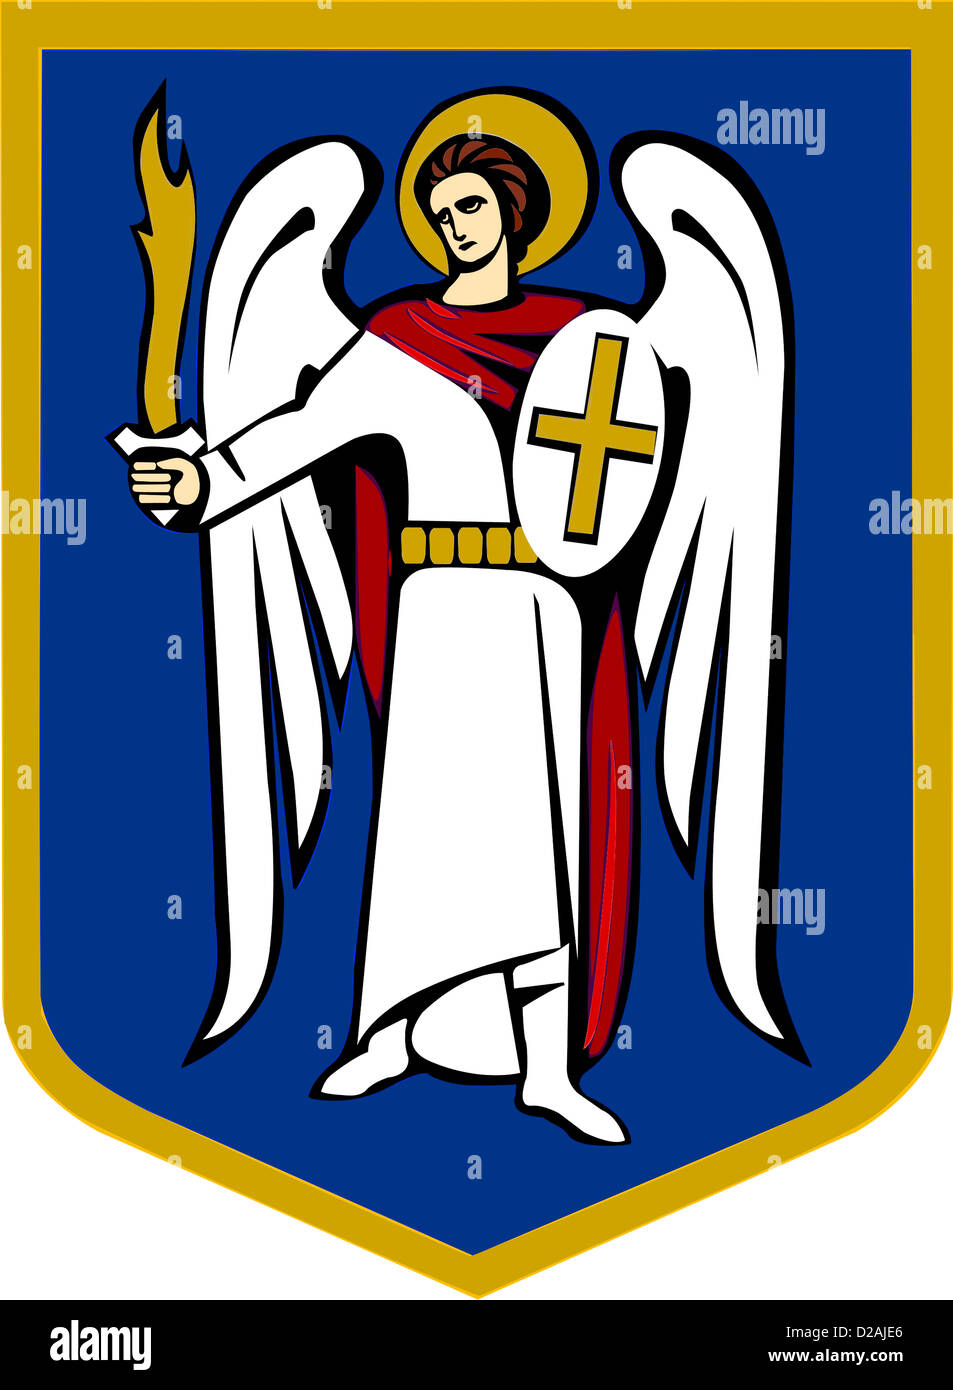 Wappen von der ukrainischen Hauptstadt Kiew. Stockfoto